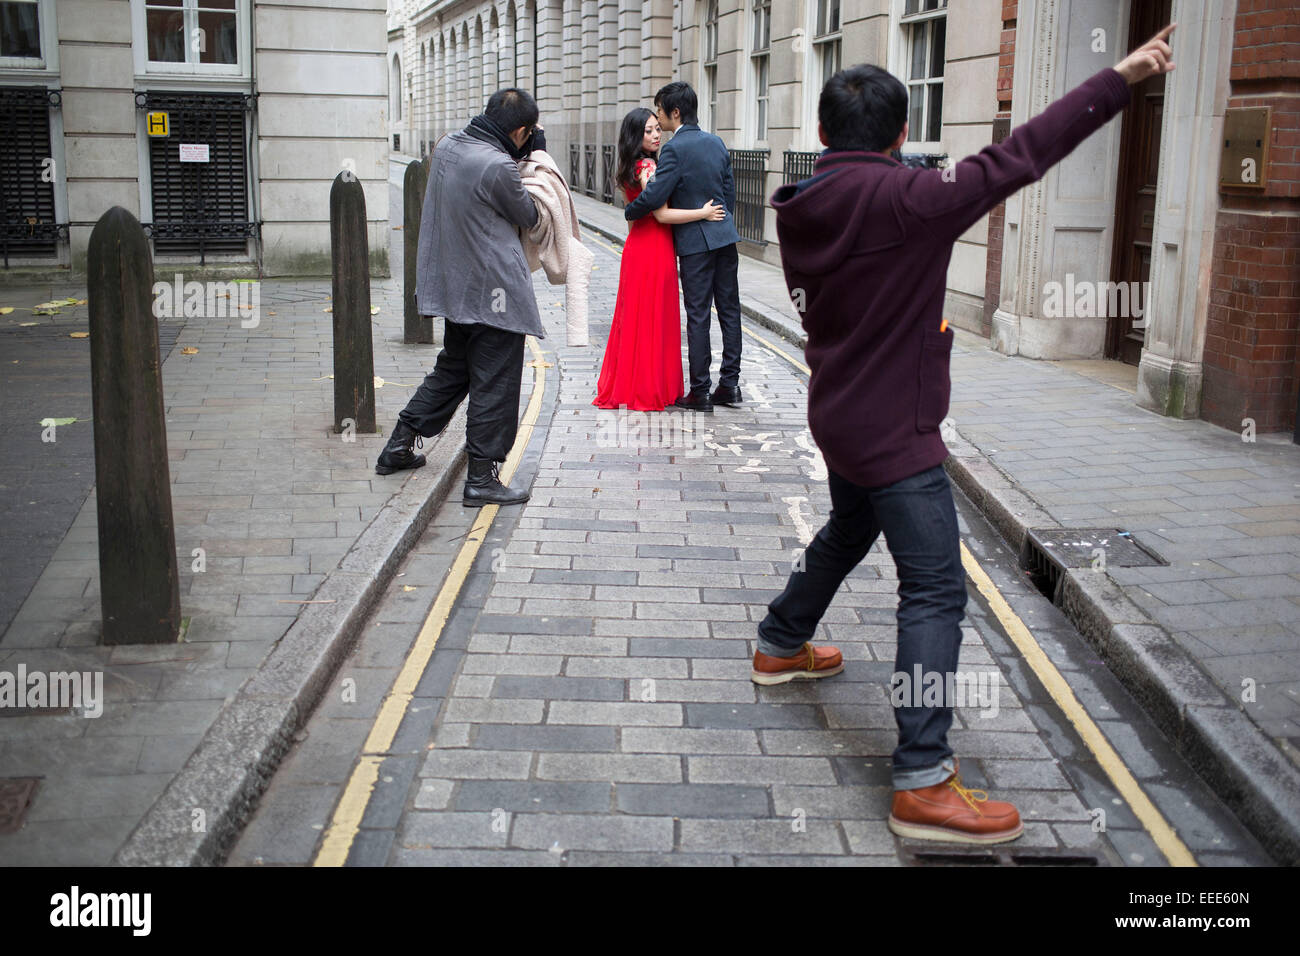 Asiatischen Fotografen Fotografieren ein chinesisches Ehepaar für ihre Hochzeitsfotos. London, UK. Dies ist ein alltäglicher Anblick, wie Paare aus Asien ihre Fotos wie vor ihrem eigentlichen Hochzeitstag trägt ihr Kleid und Anzug getan haben. Stockfoto